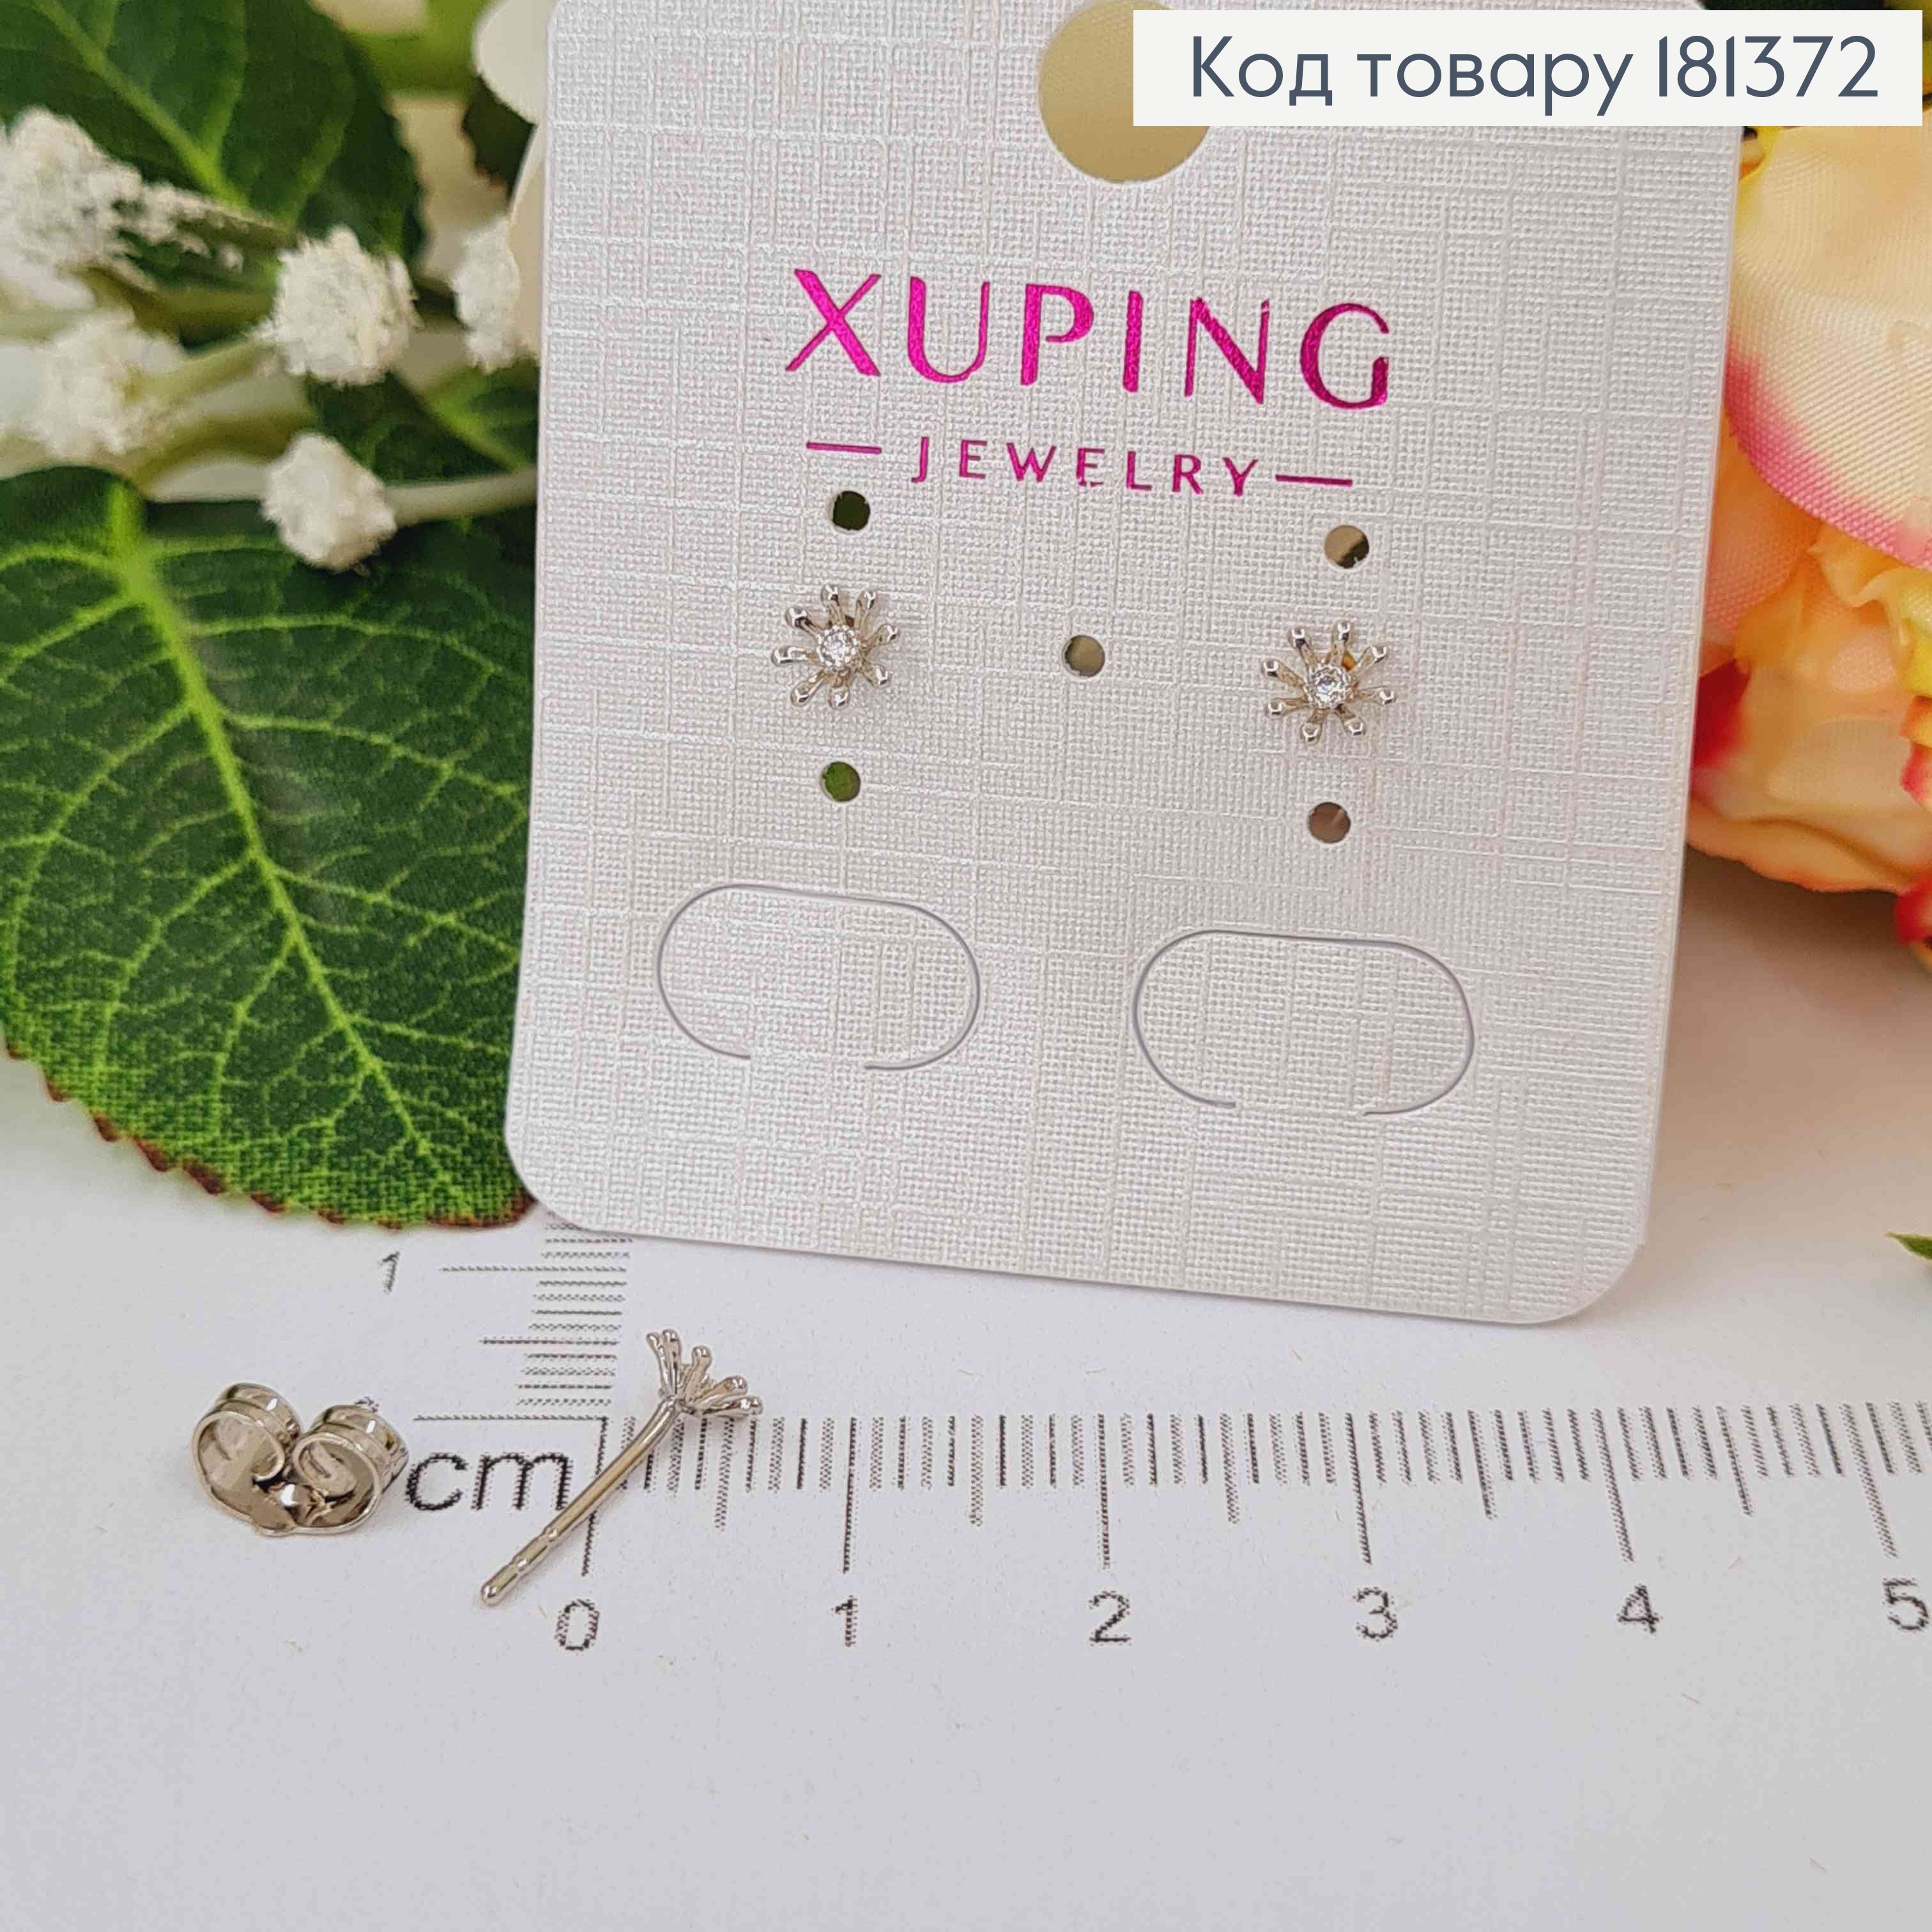 Сережки родовані, маленькі квіточки, з камінчиками, 5мм,  Xuping 181372 фото 2